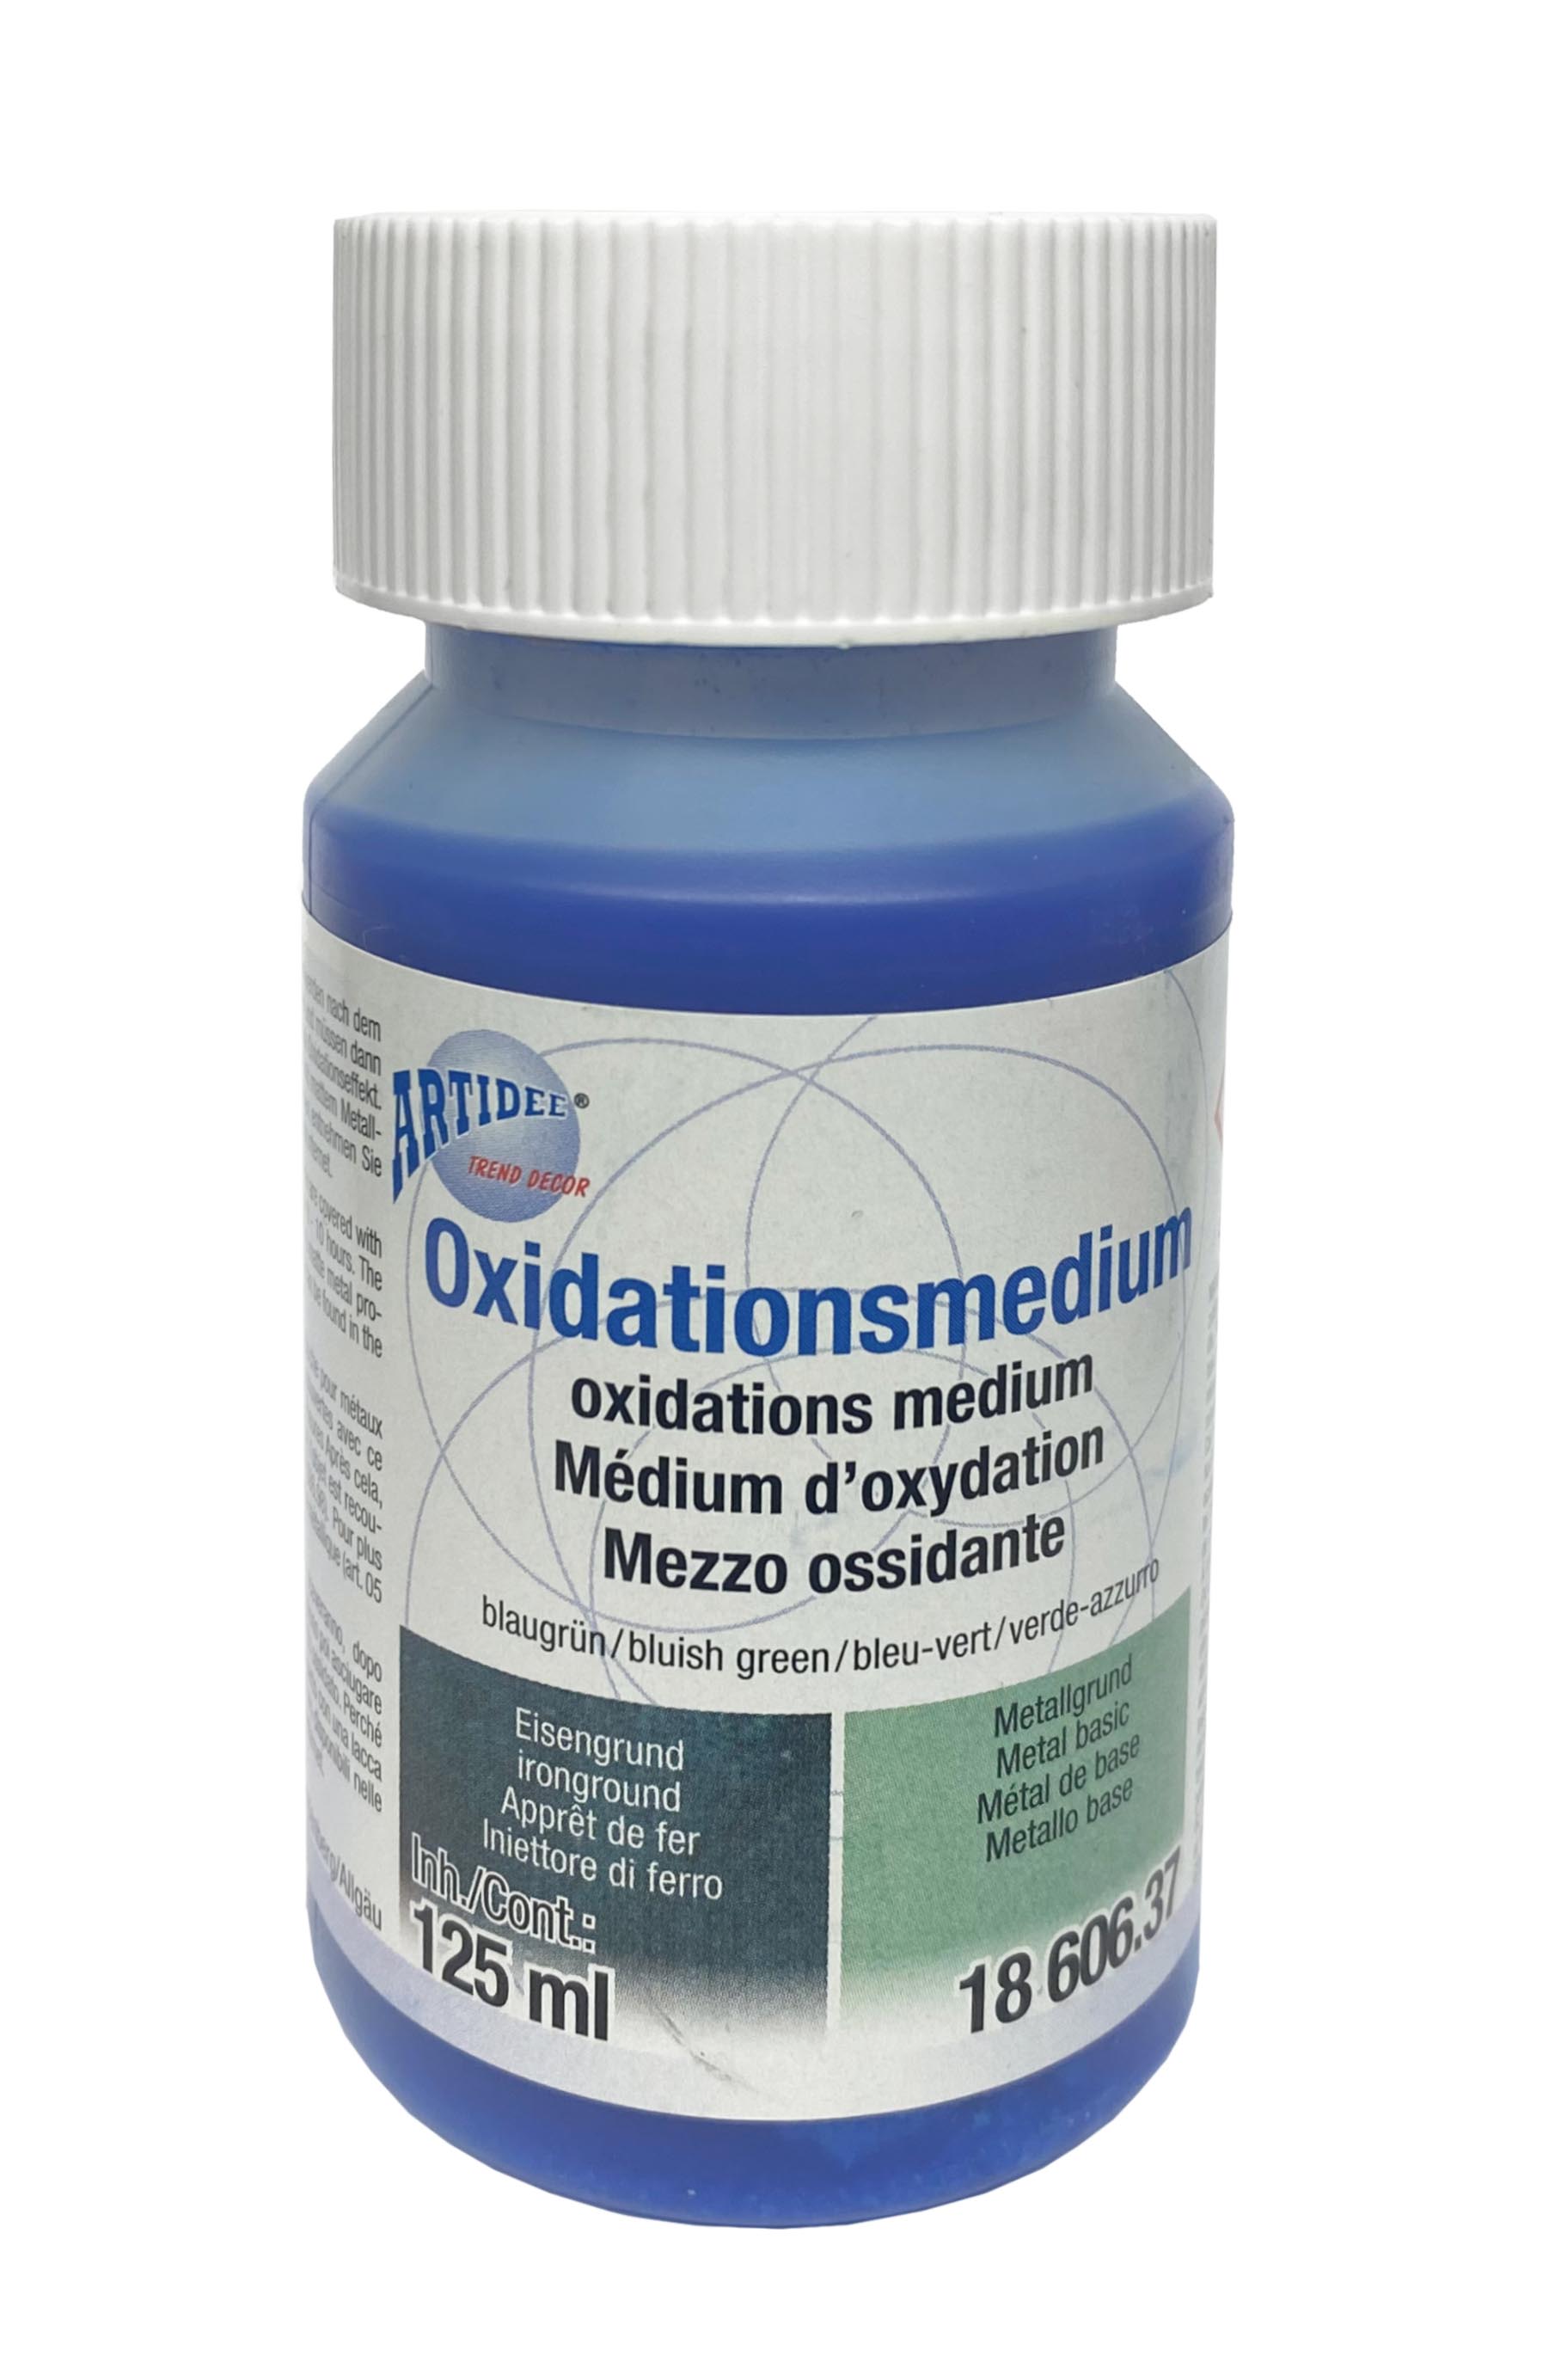 Oxidationsmedium blaugrün für Metall- und Eisengrund 125ml